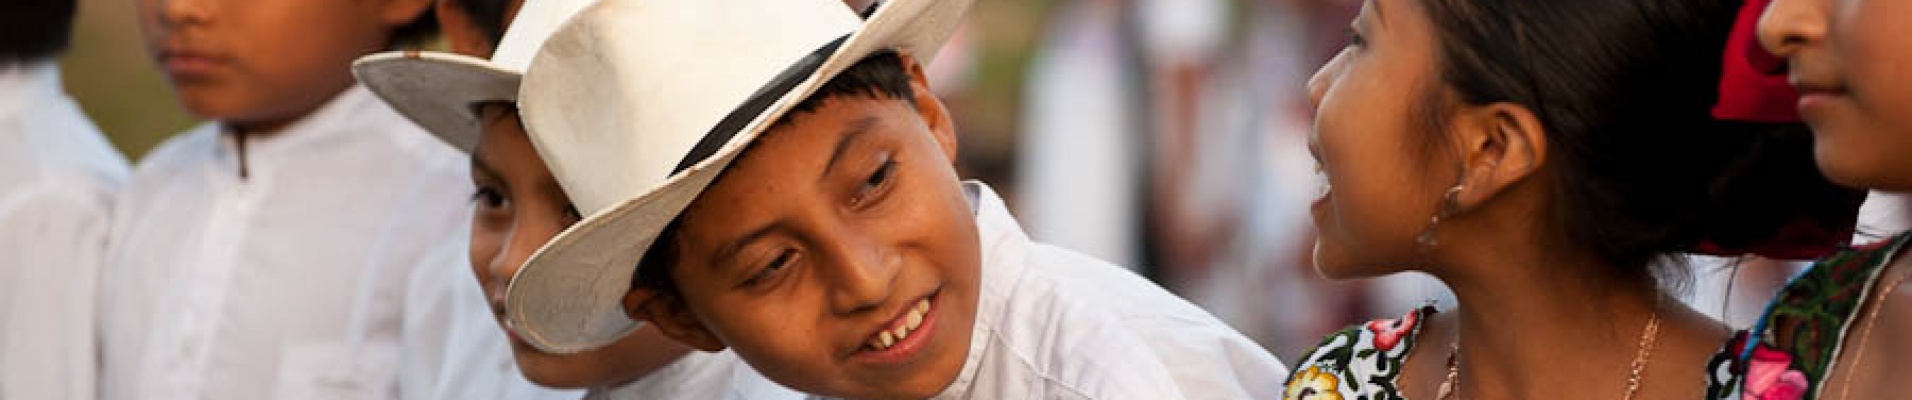 Enfants mexicains en habits traditionnels